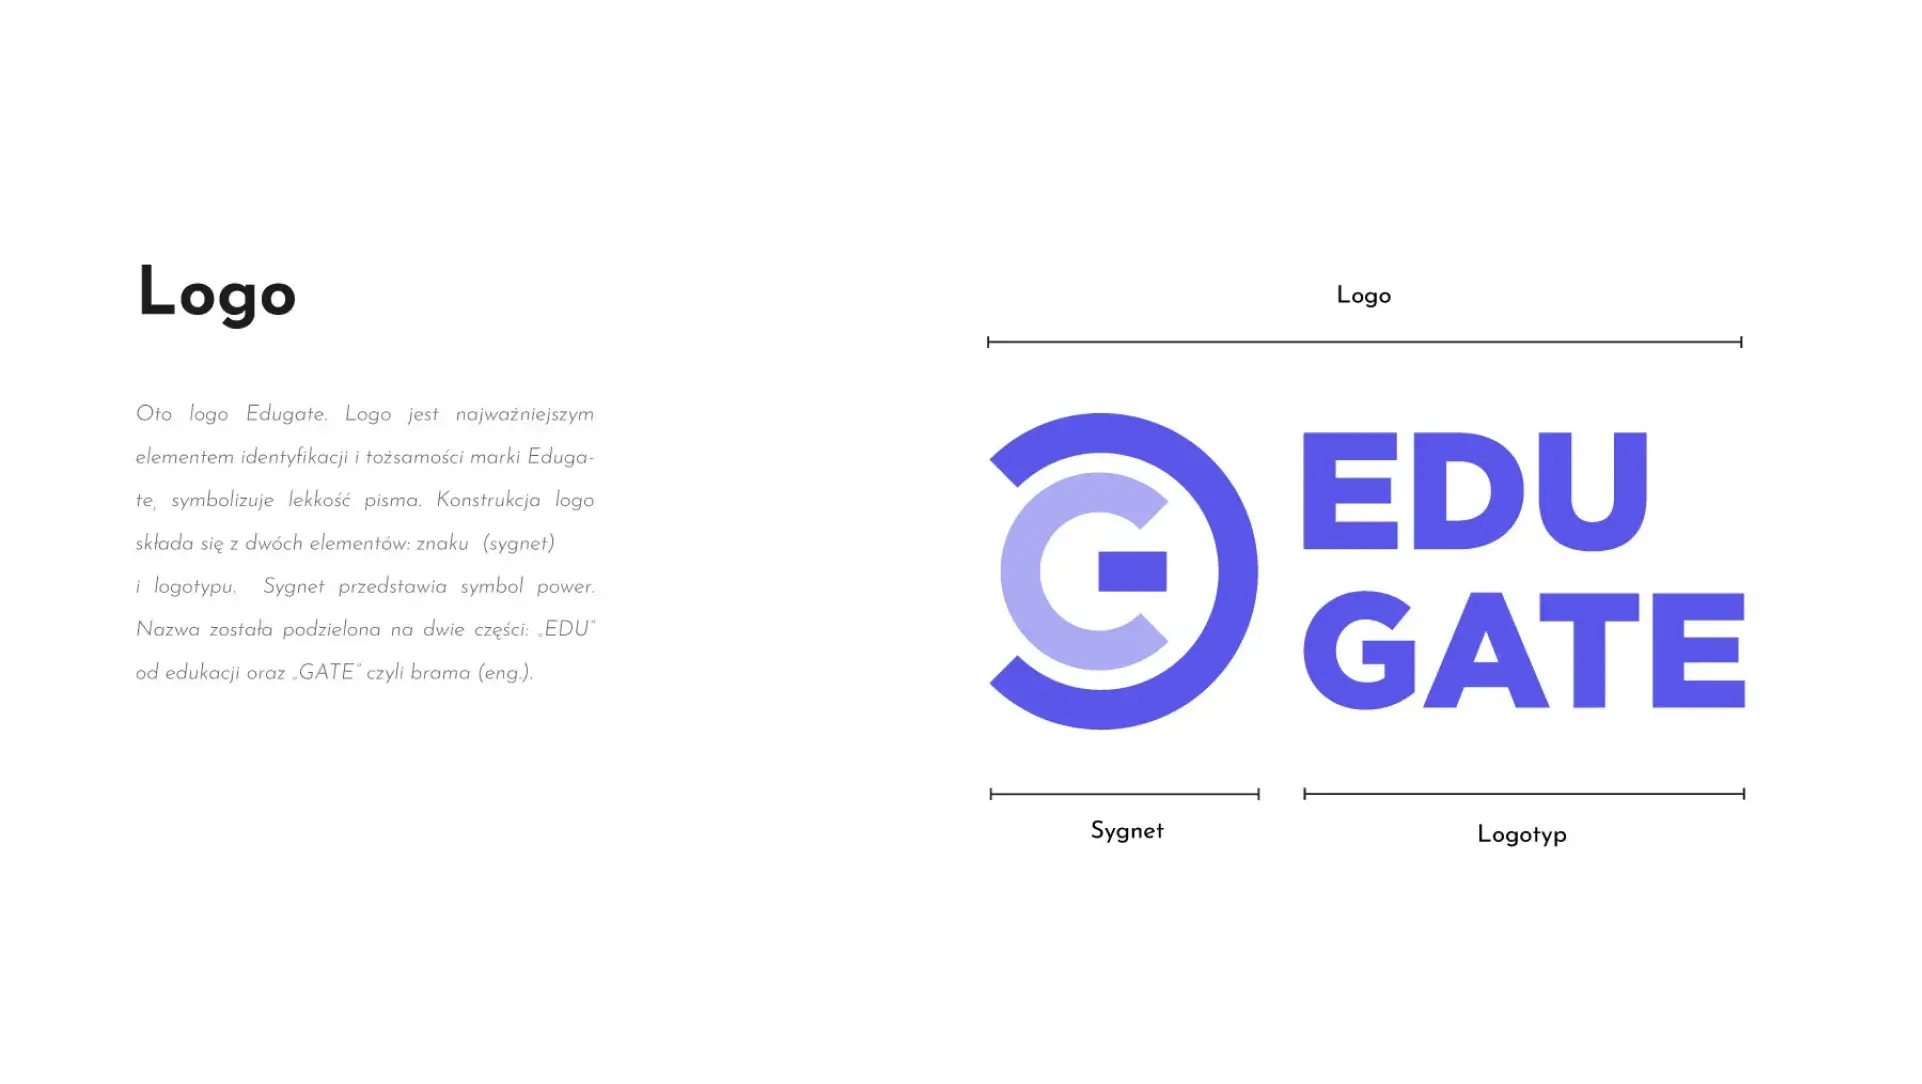 Opis logo EduGate: Oto logo EduGate. Logo jest najwazniejszym elementem identyfikacji i tożsamości marki EduGate, sympolizuje lekkość pisma. Konstrukcja logo składa się z dwóch elementów: znaku (sygnet) i logotypu. Sygnet przedstawia symbol power. Nazwa została podzielona na dwie części Edu od edukacji oraz Gate, czyli brama.